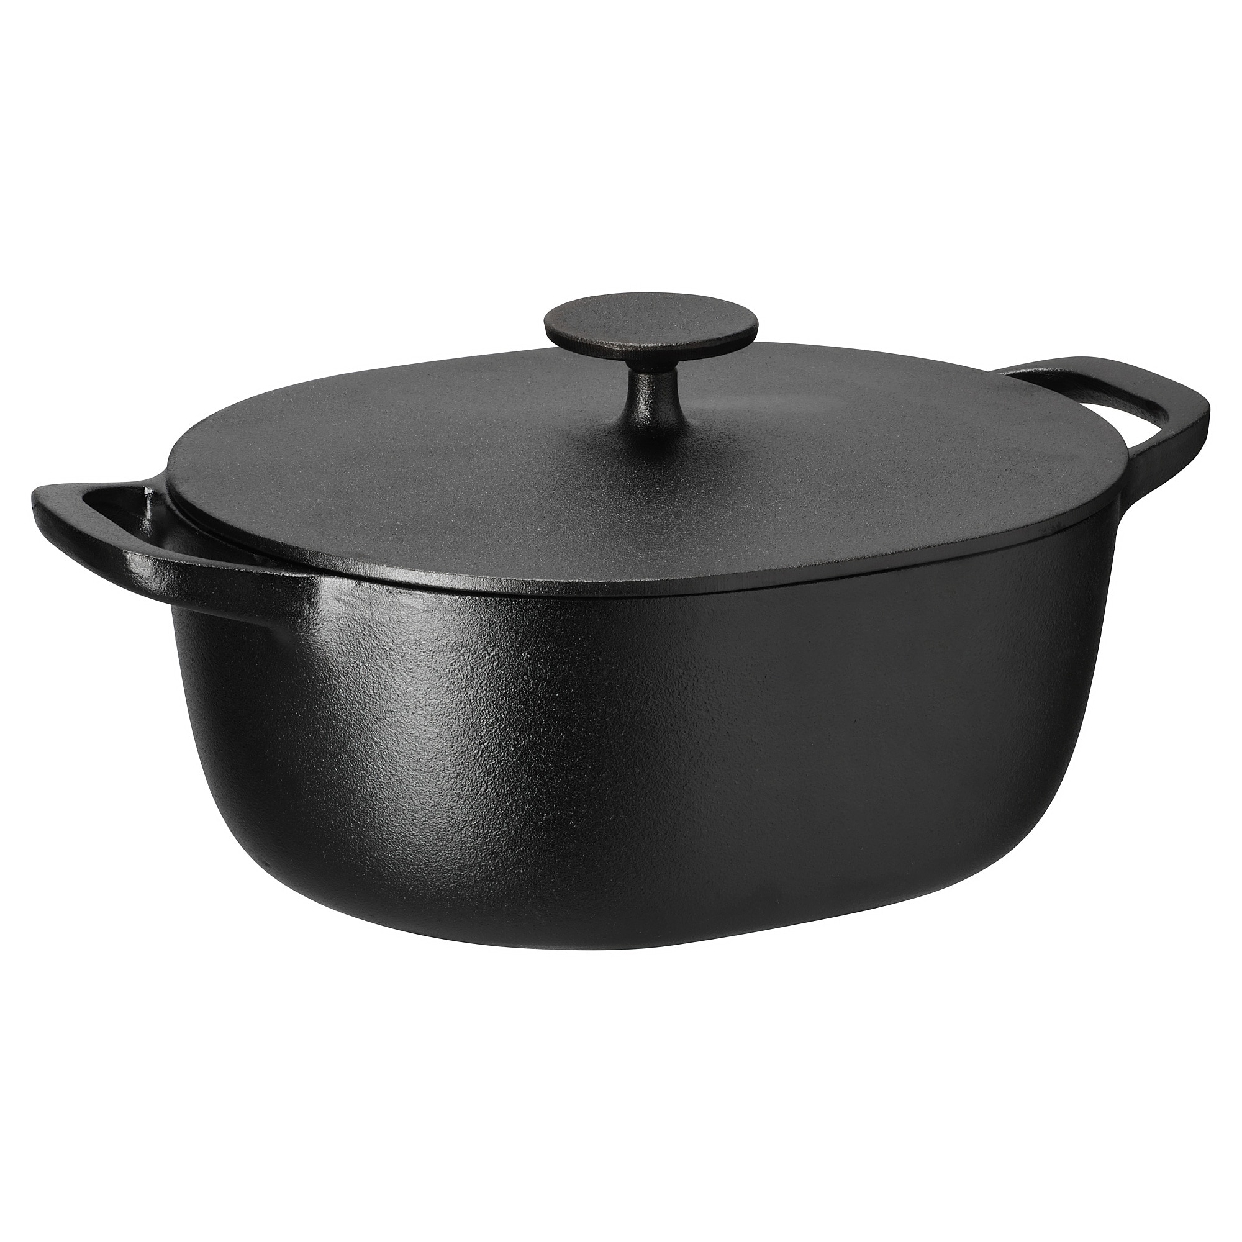 IKEA(イケア) ヴァルダーゲン キャセロール鍋の商品画像サムネ1 